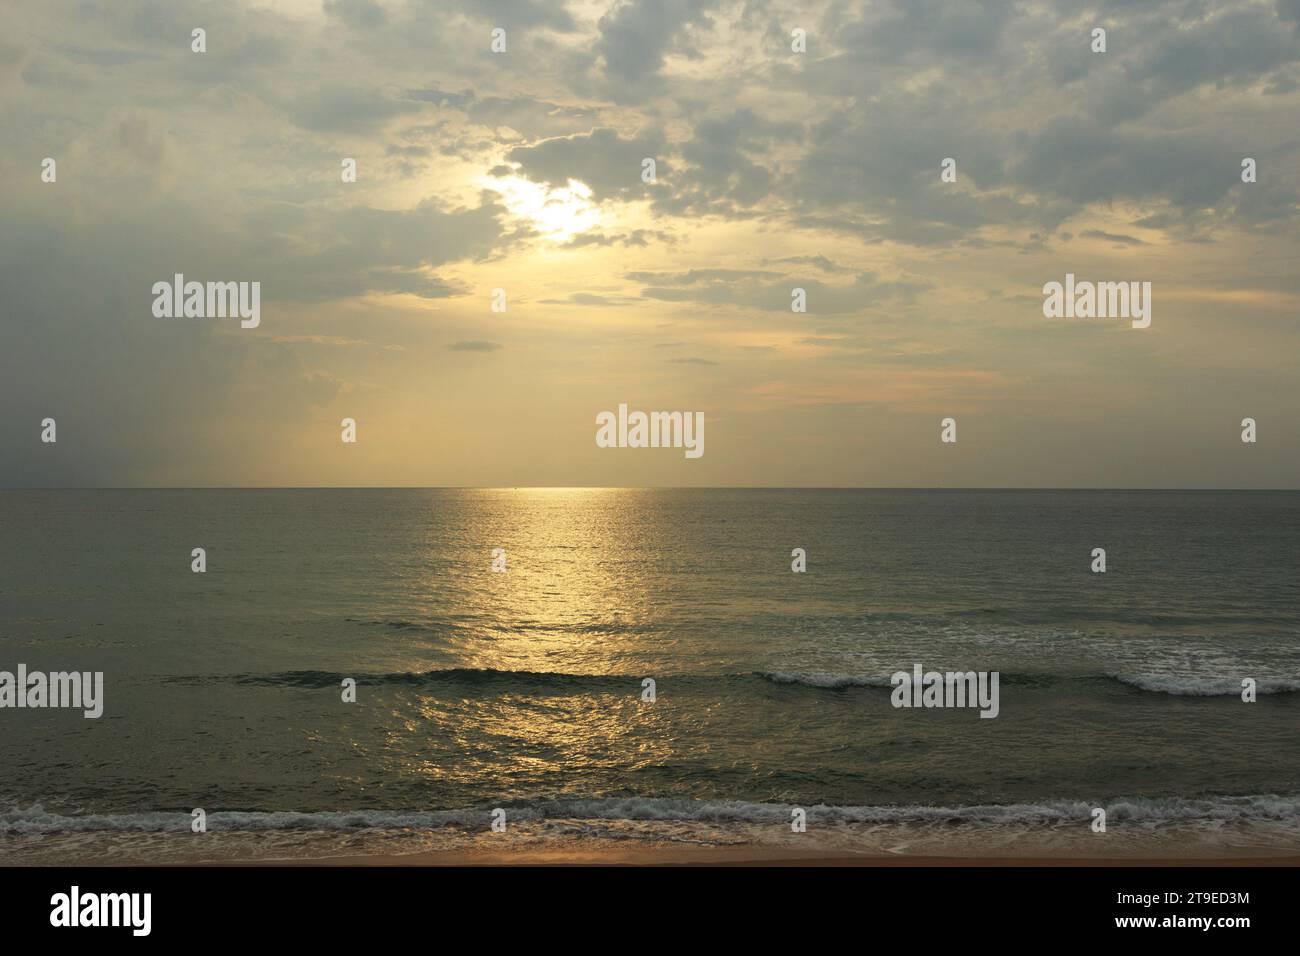 Wunderschöner Sonnenuntergang am Strand. Landschaftlich schöne Meereslandschaft mit Wolken, Wellen und Sonne. Stockfoto